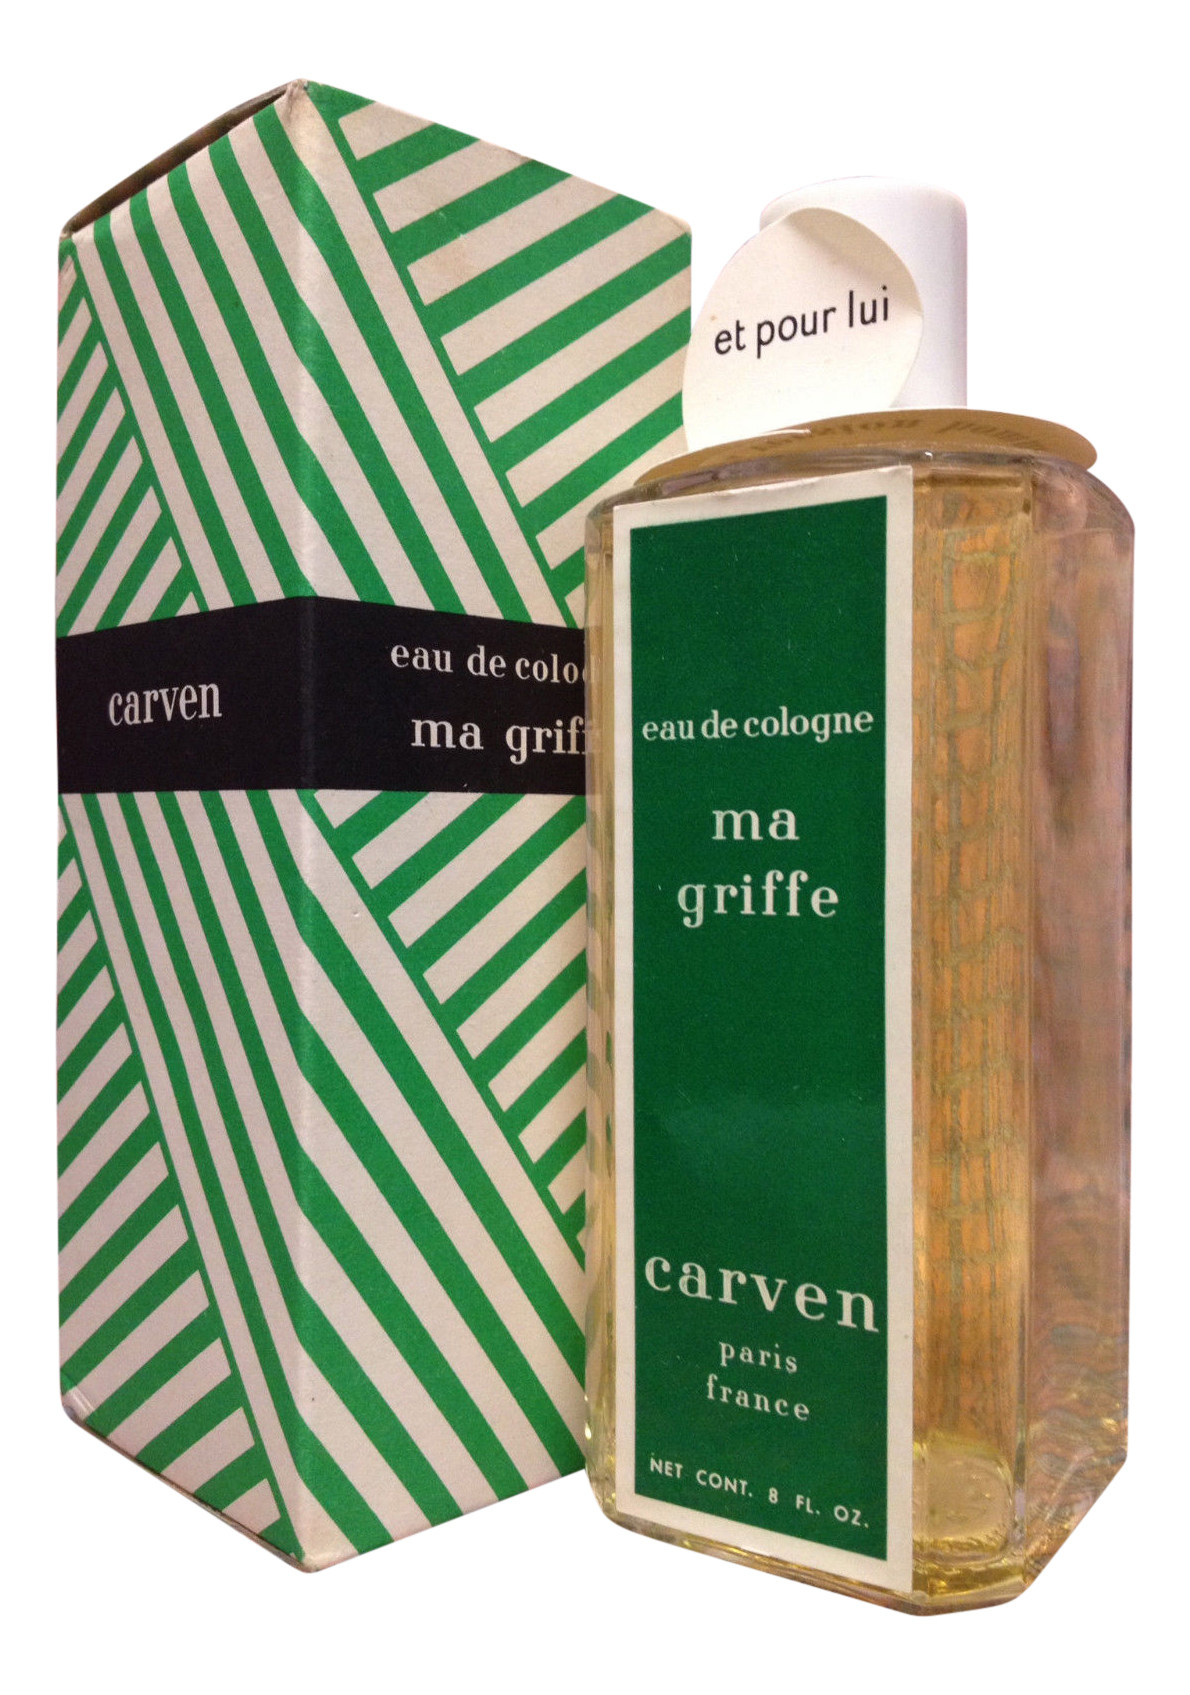 Ma Griffe by Carven (Eau de Cologne) » Reviews & Perfume Facts